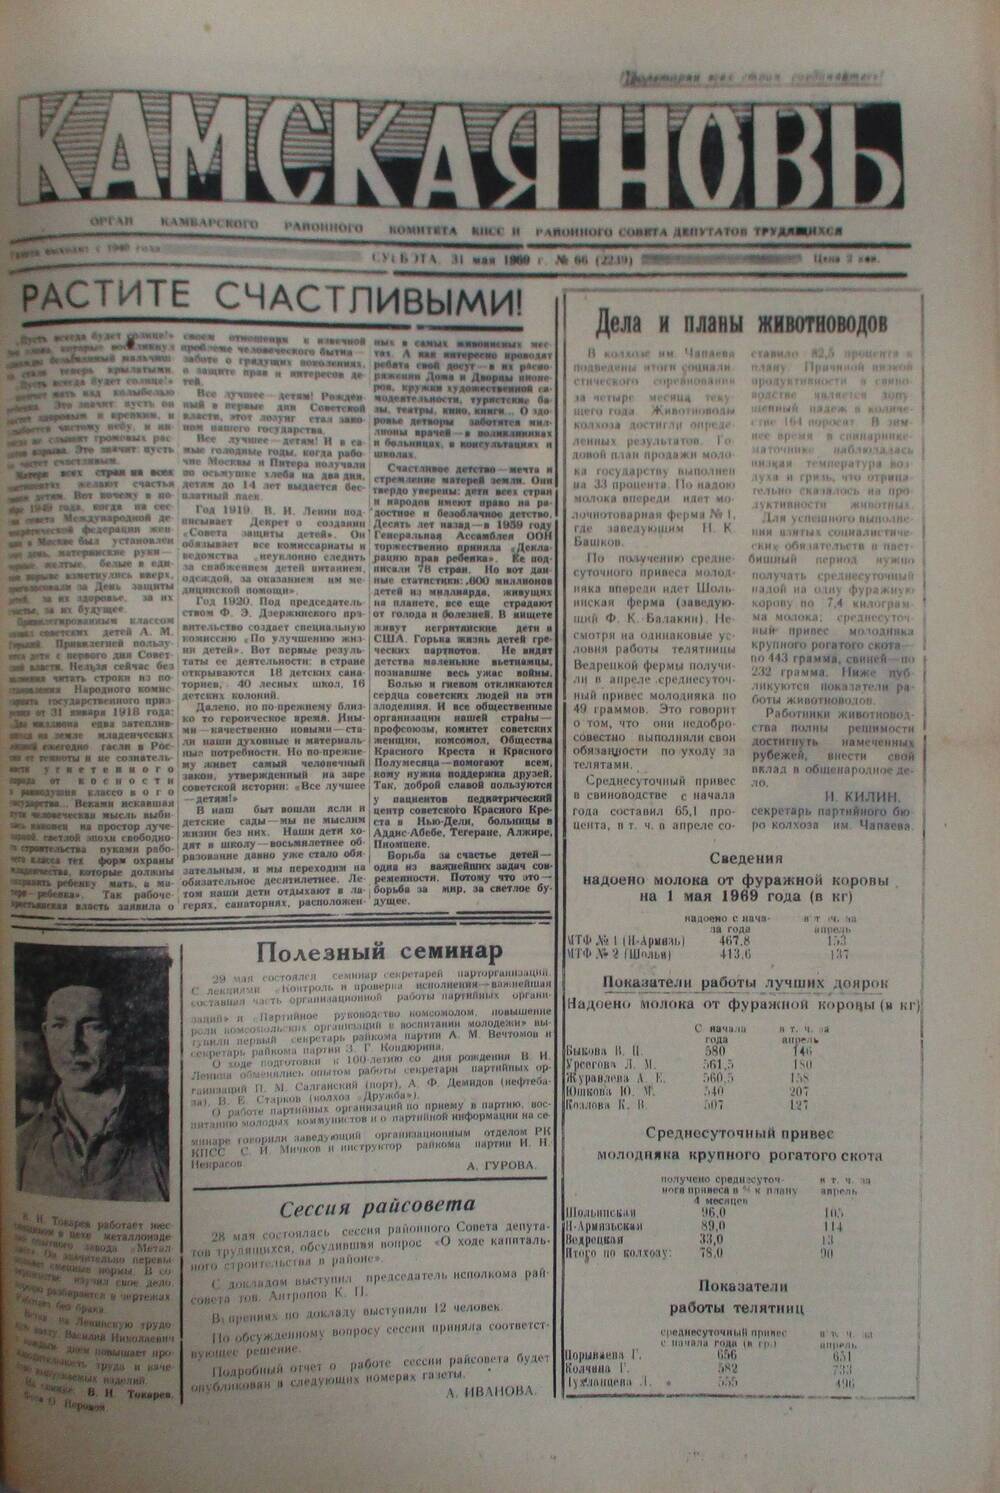 Газеты Камская новь за 1969 год, орган Камбарского райсовета и  РККПСС, с №1 по №66, с №68 по №156. №66.